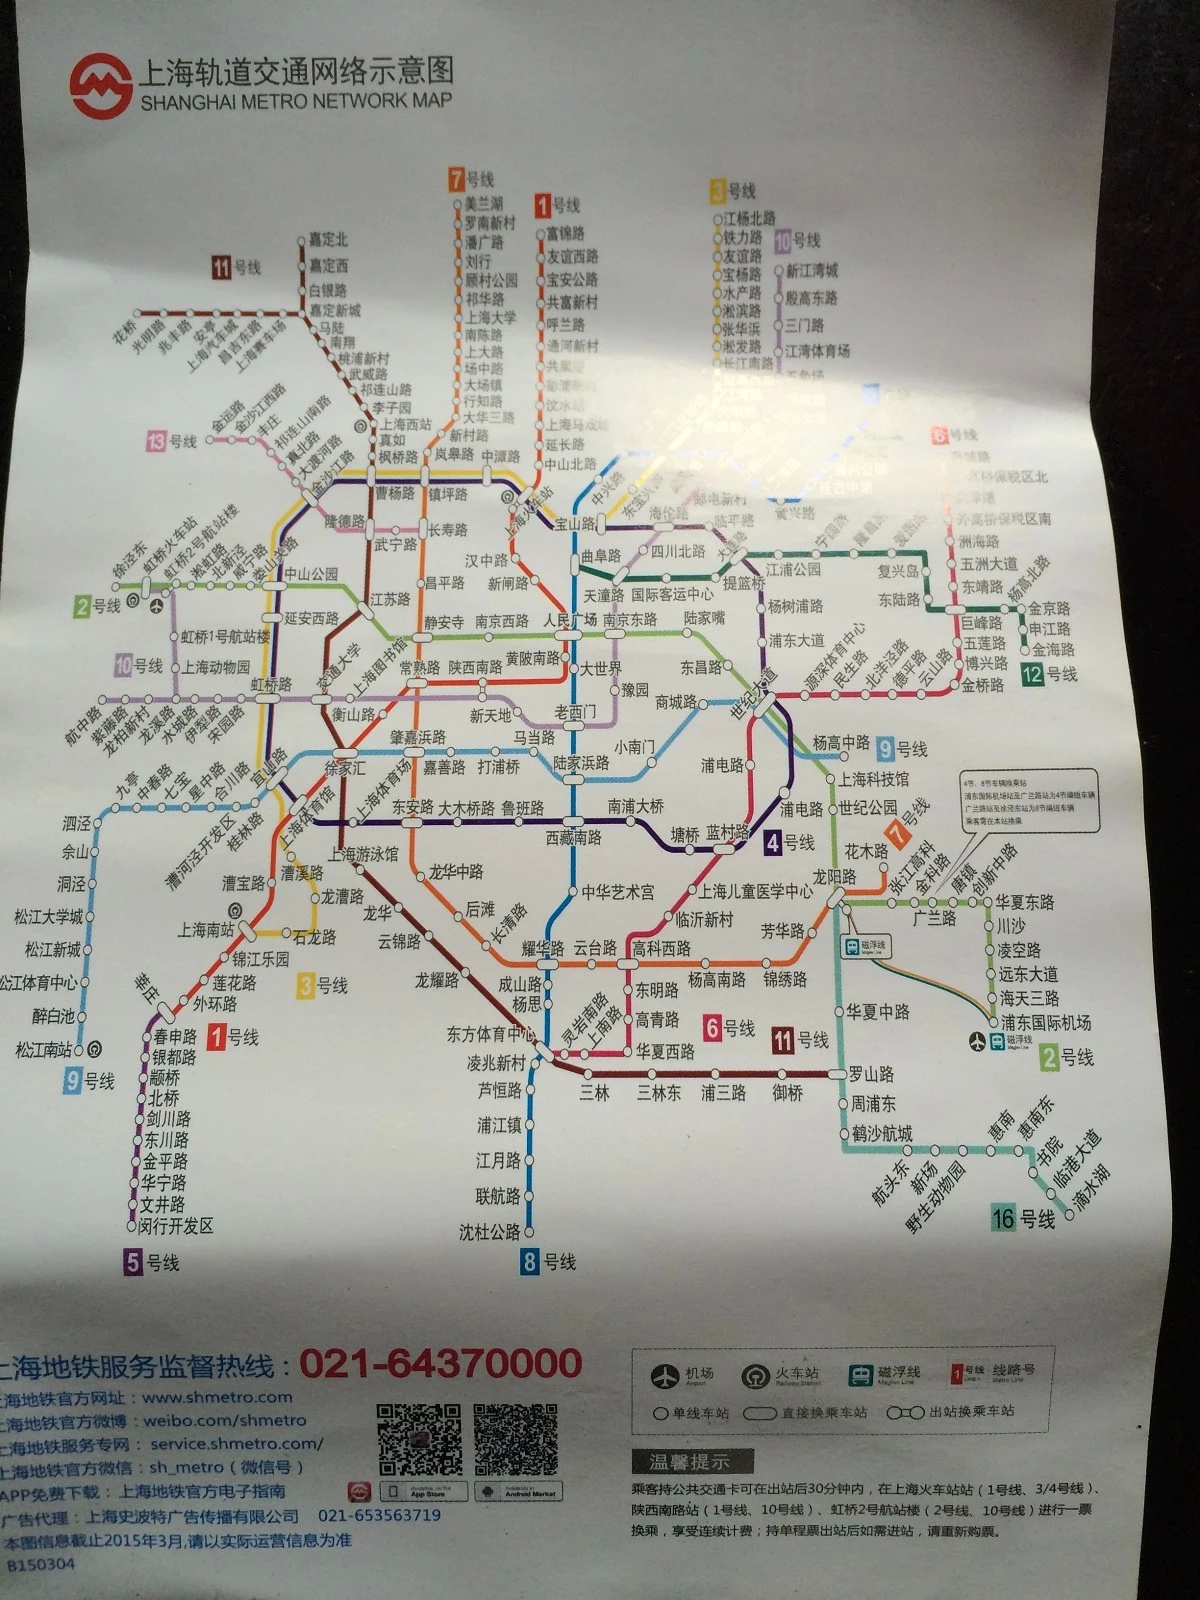 在上海地铁站有地铁示意图可以领取,到上海旅游亲可以拿一张,方便